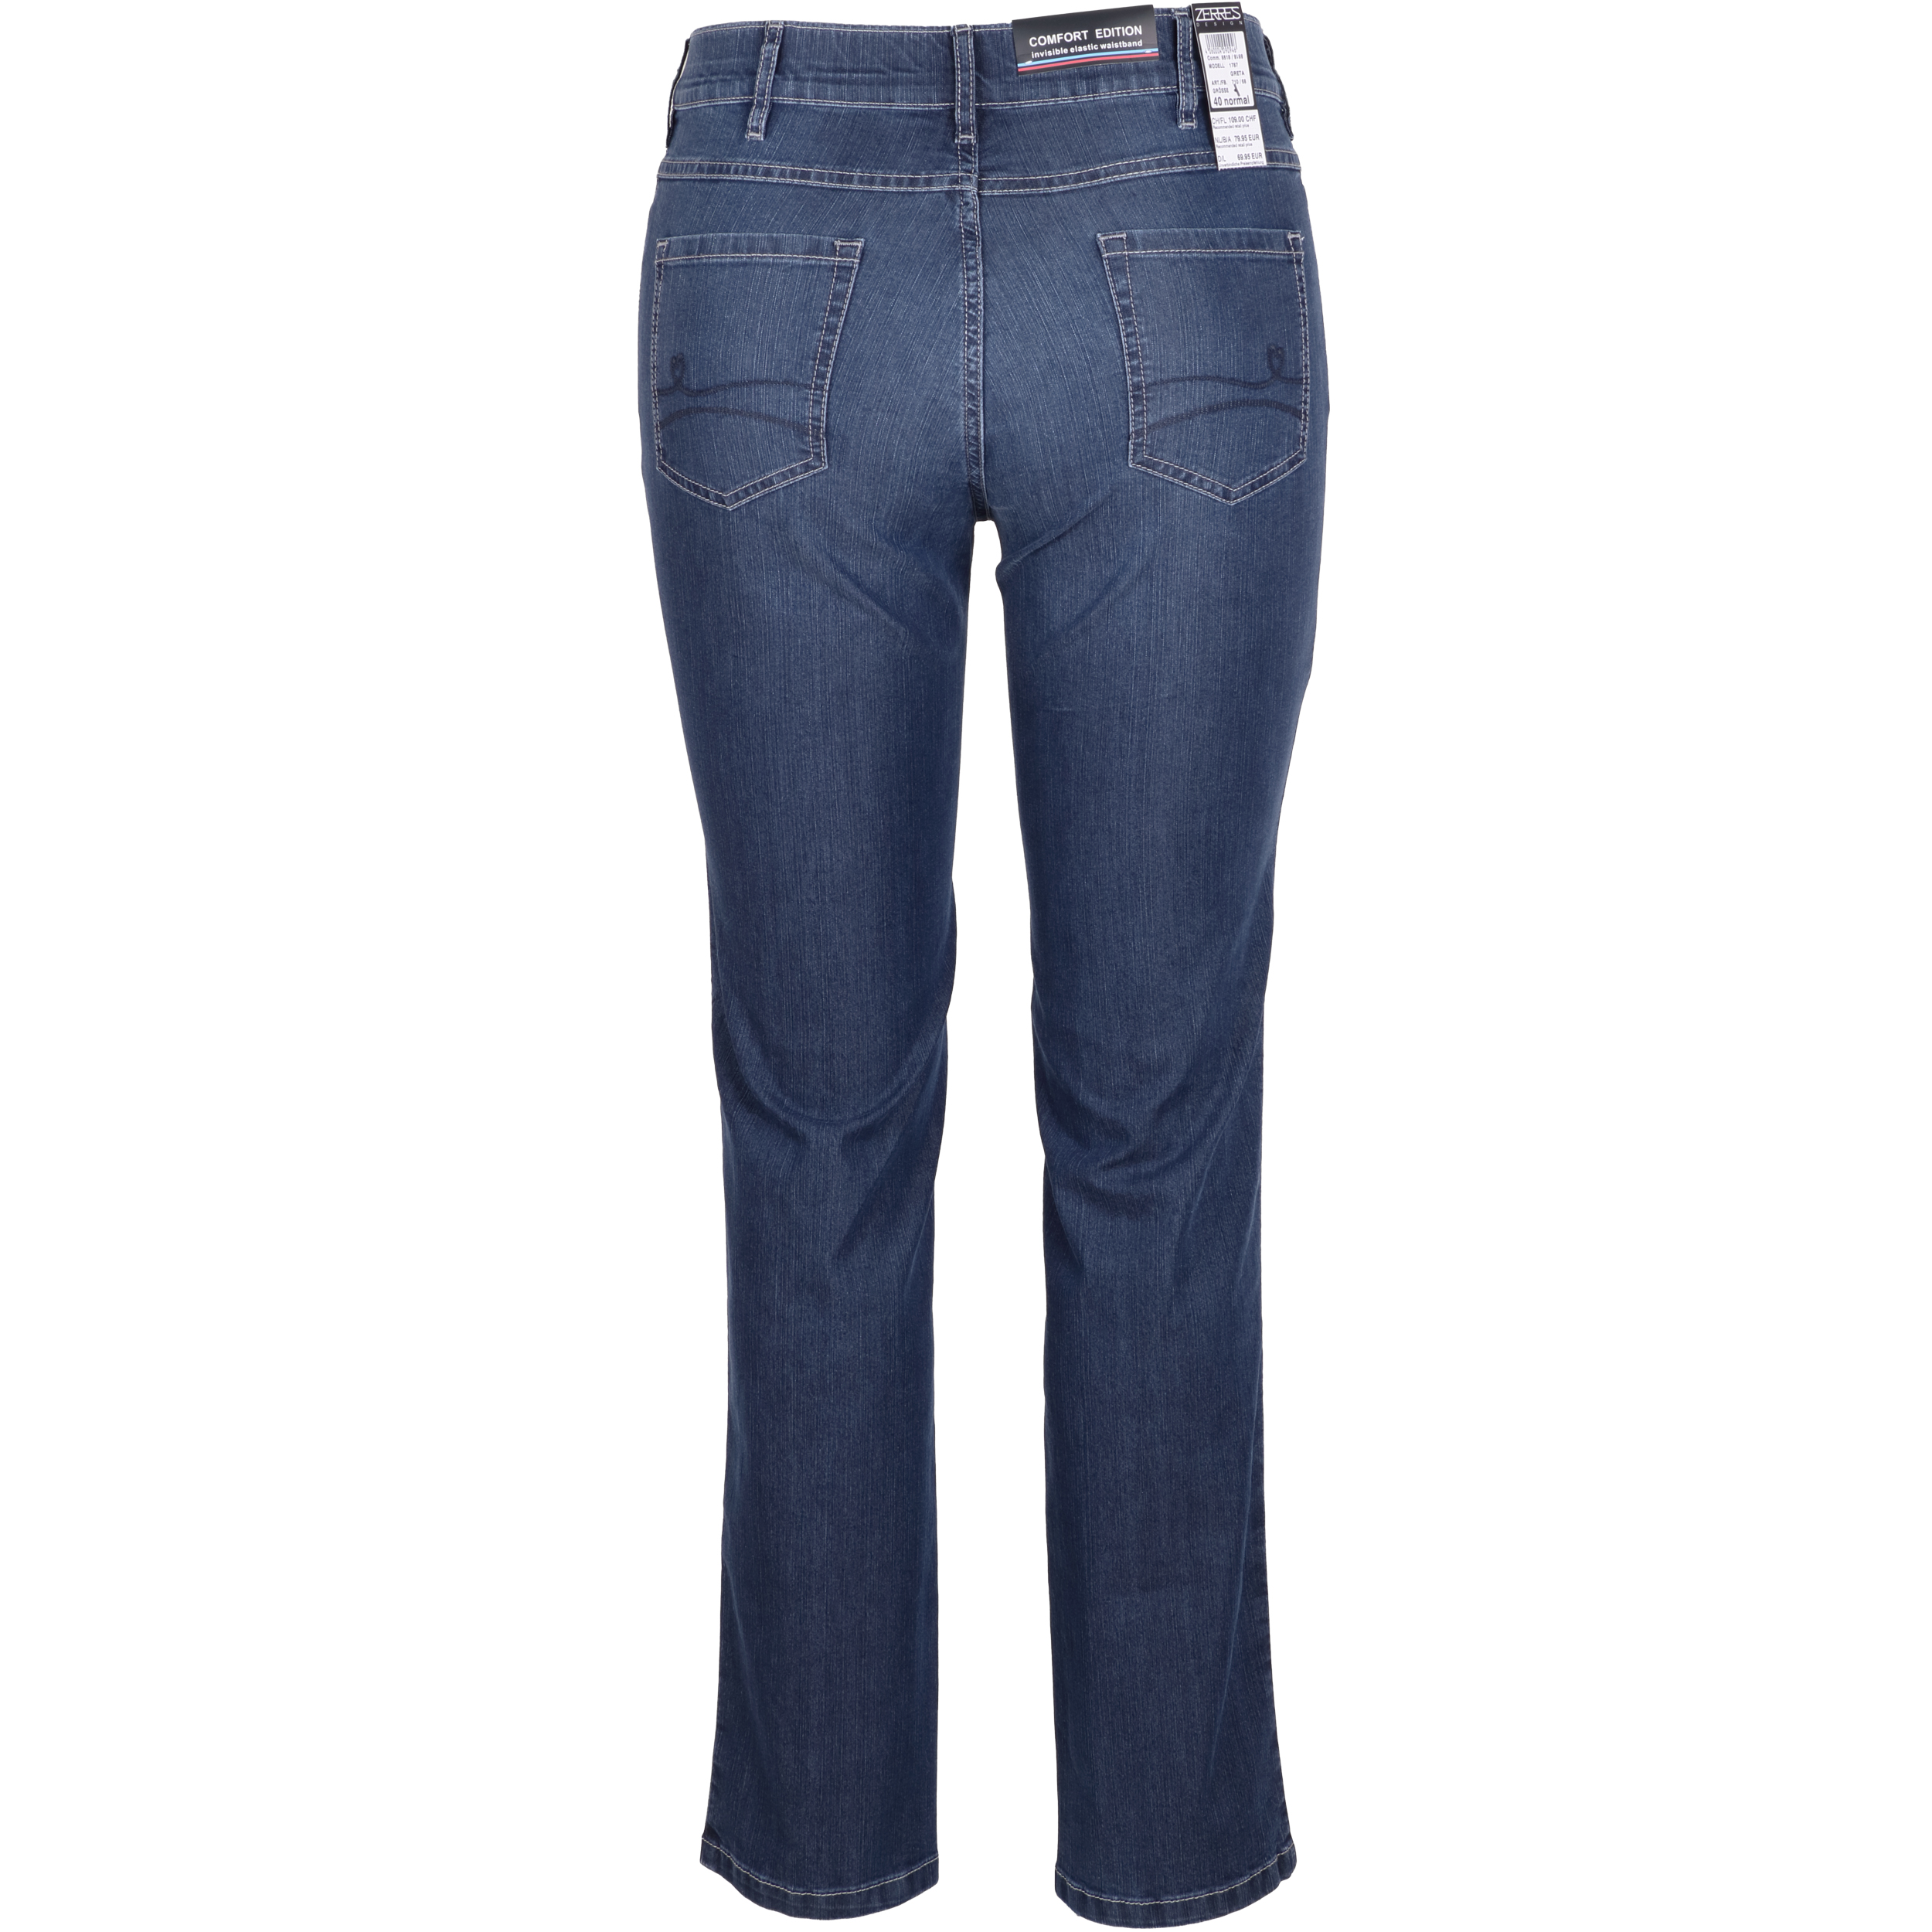 Zerres Damen Jeans Greta sommerliche Qualität 48 blau